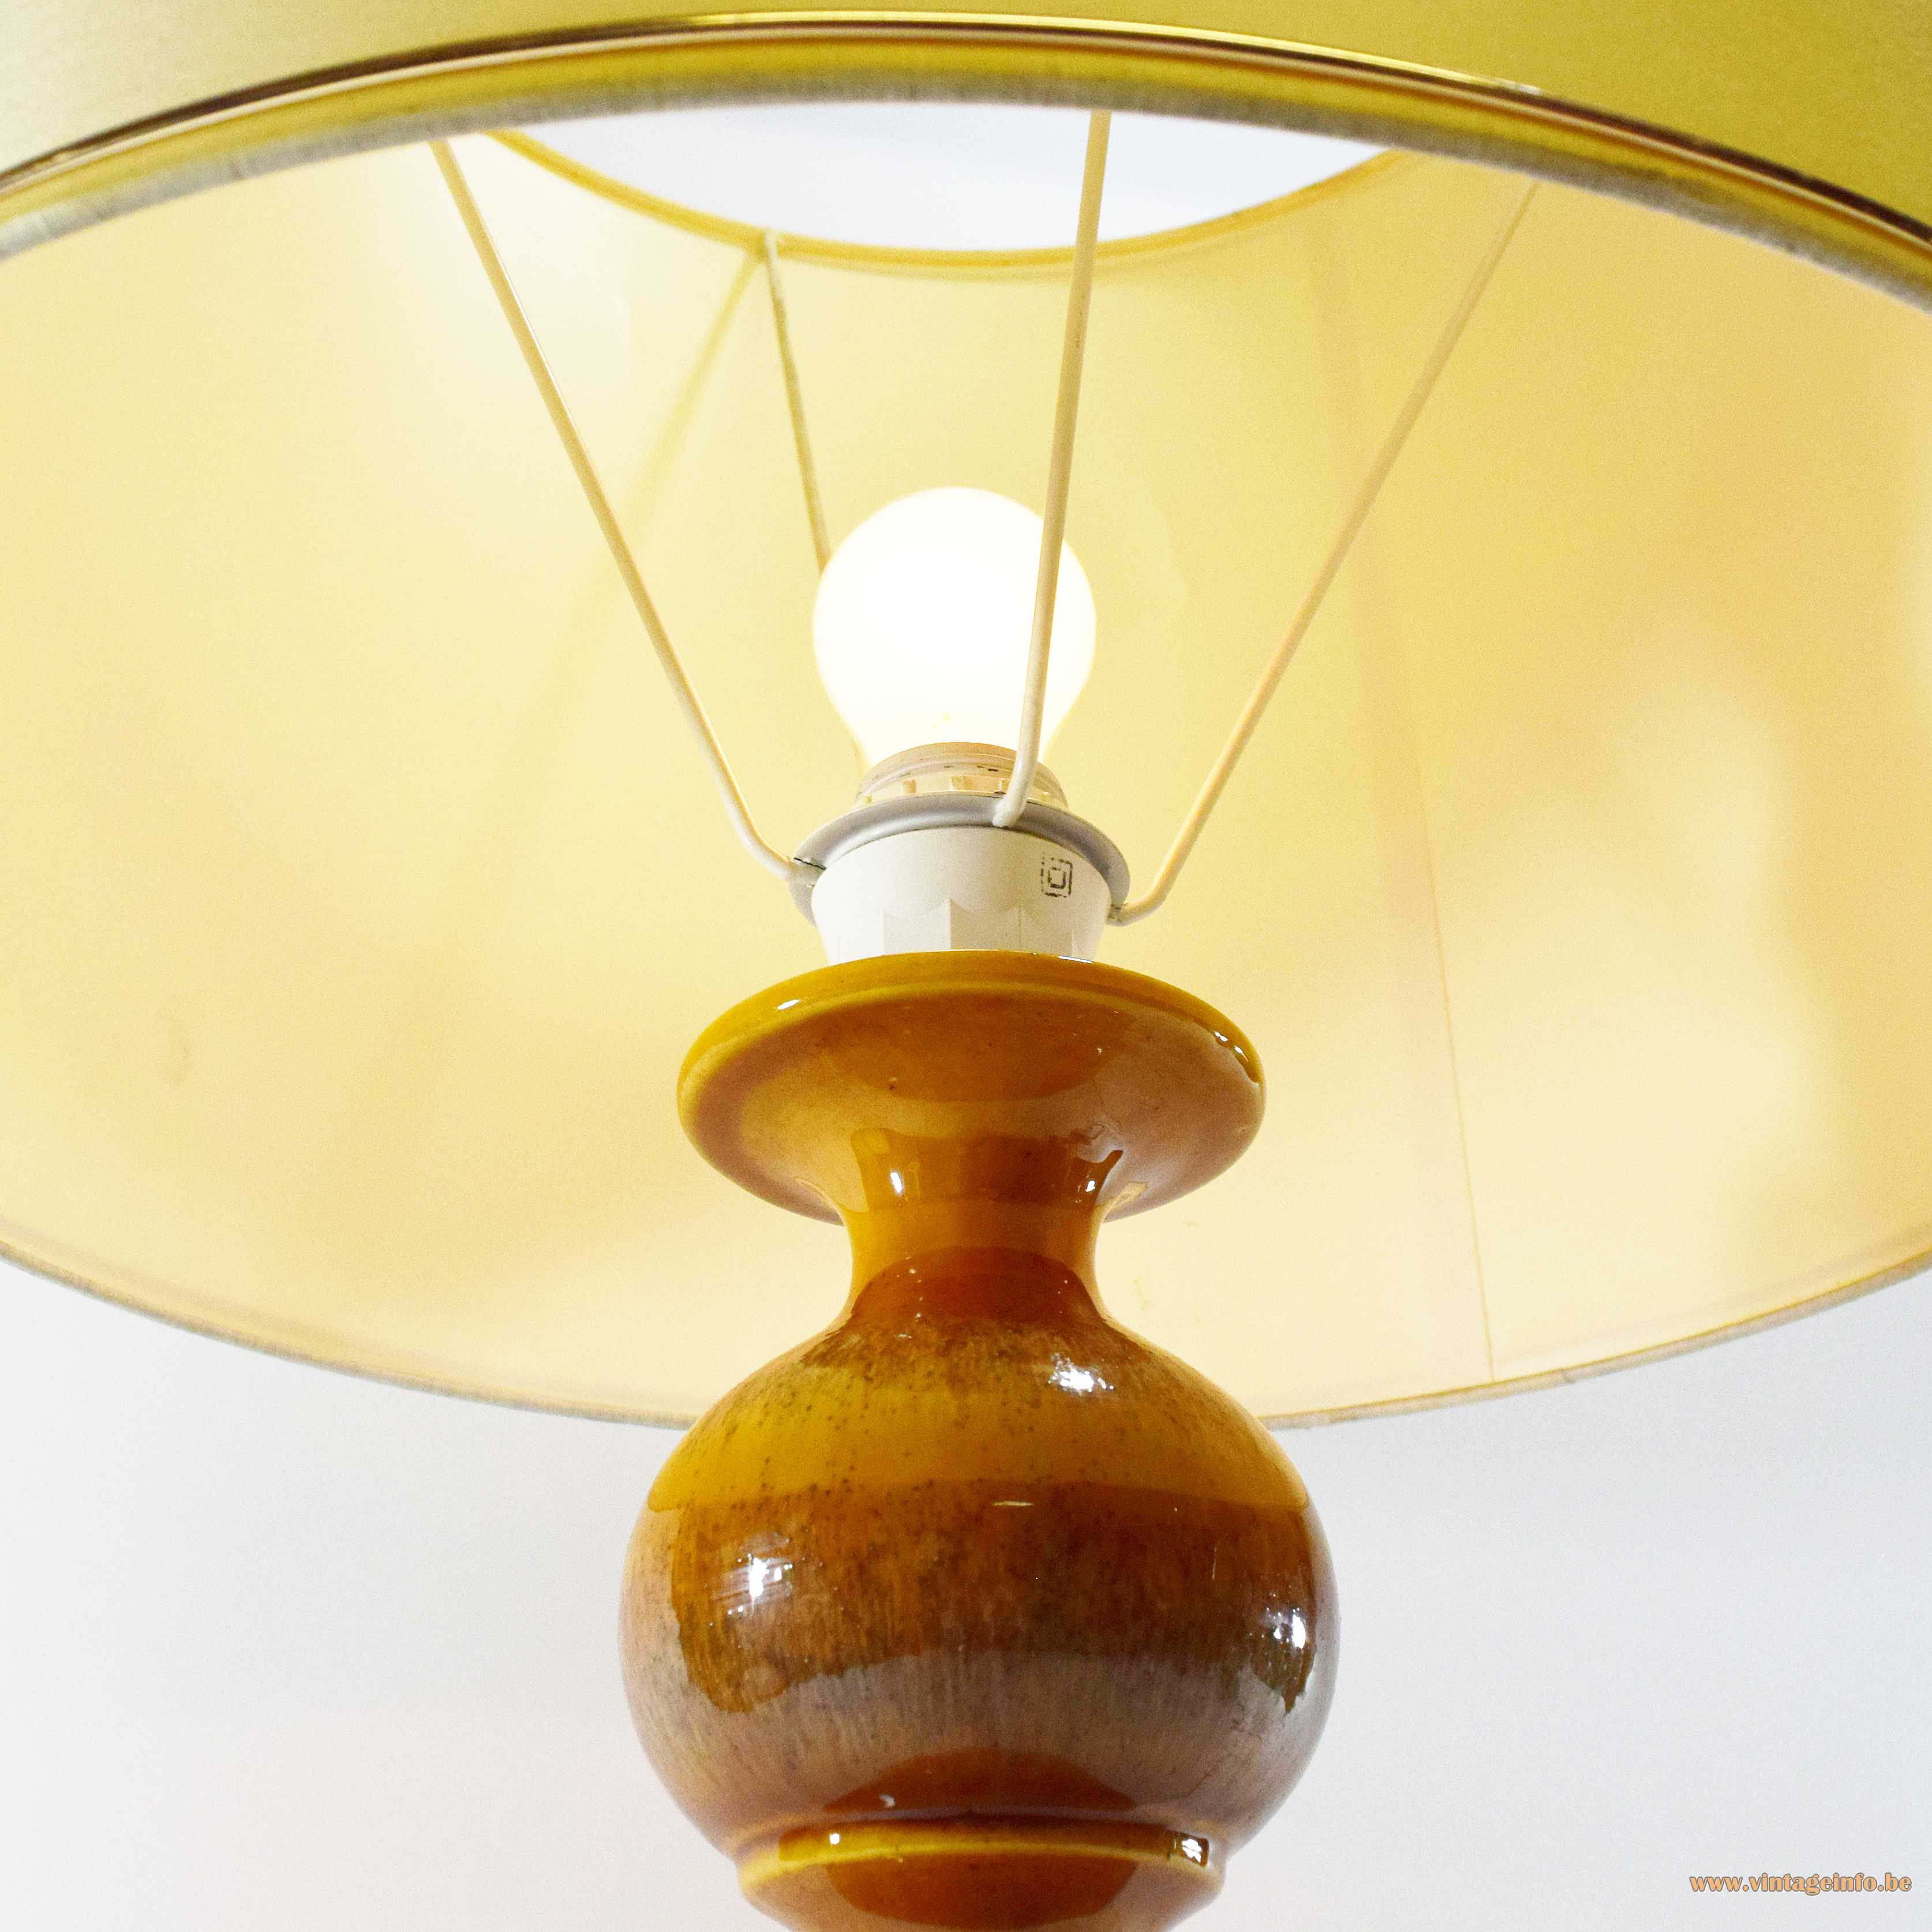 Kaiser Leuchten Ceramic Table Lamp, Glazed Ceramic Table Lamps Vintage